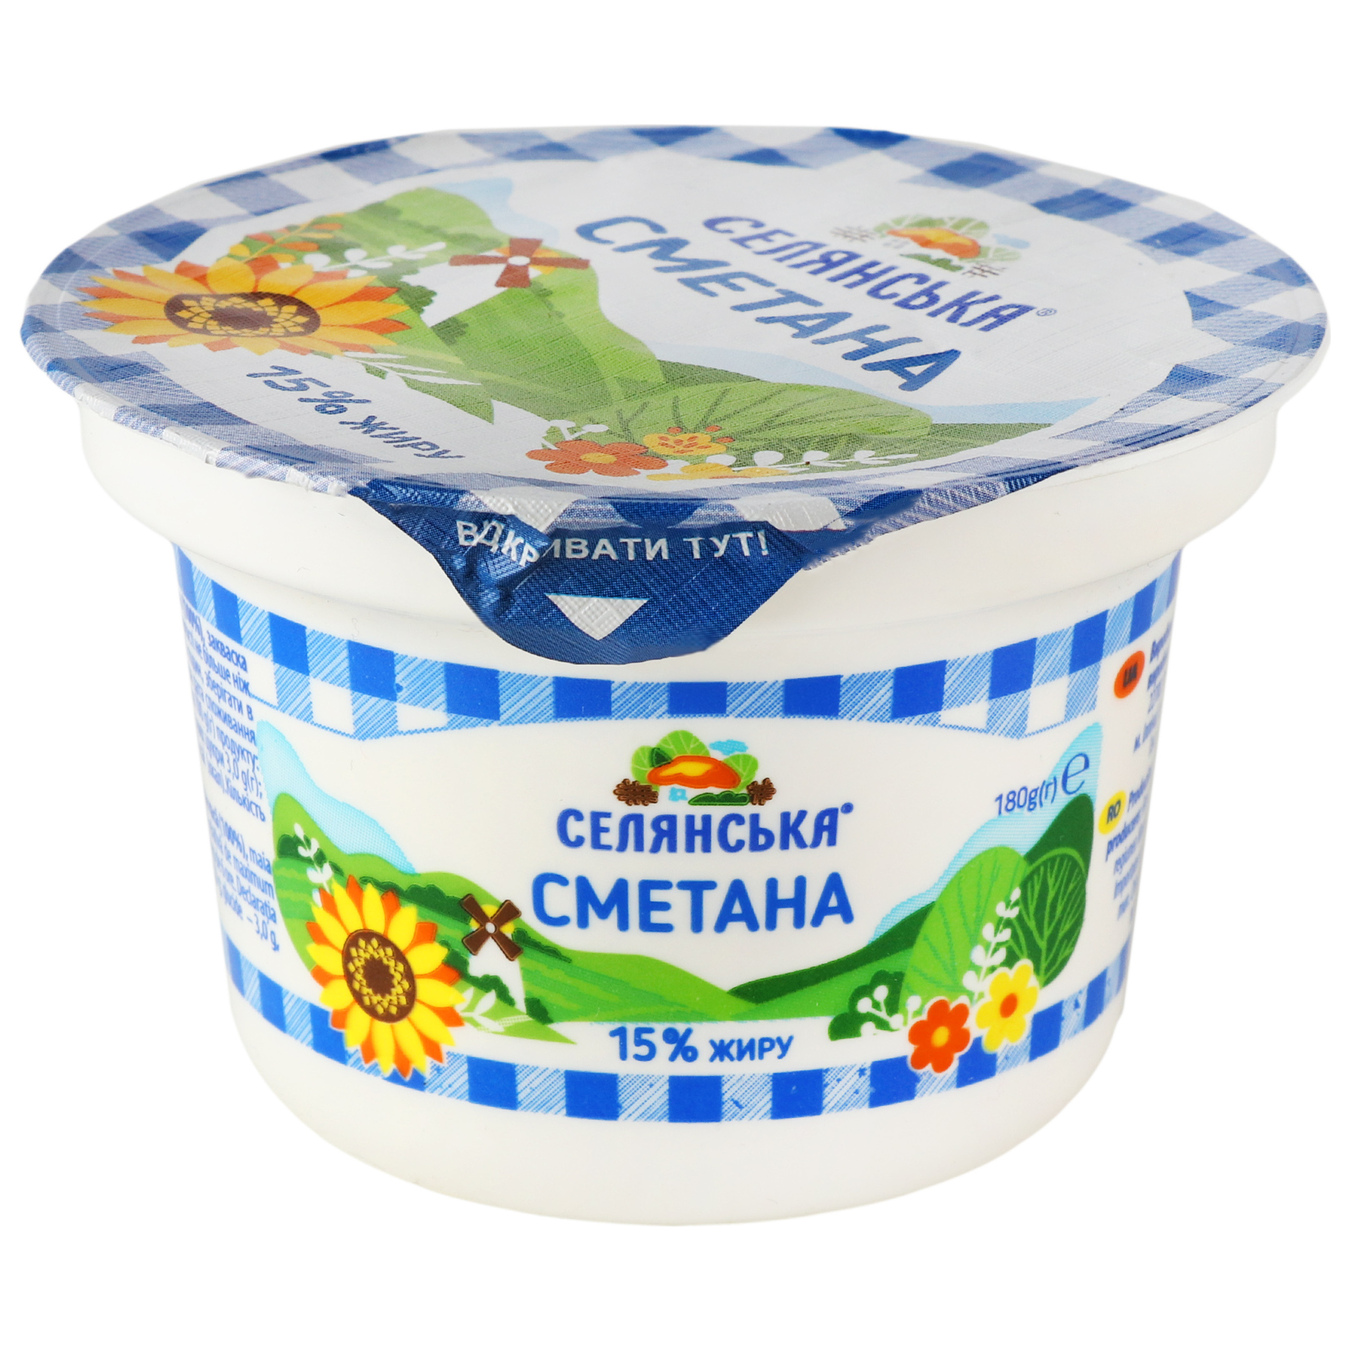 Peasant Sour Cream 15% 180g 2